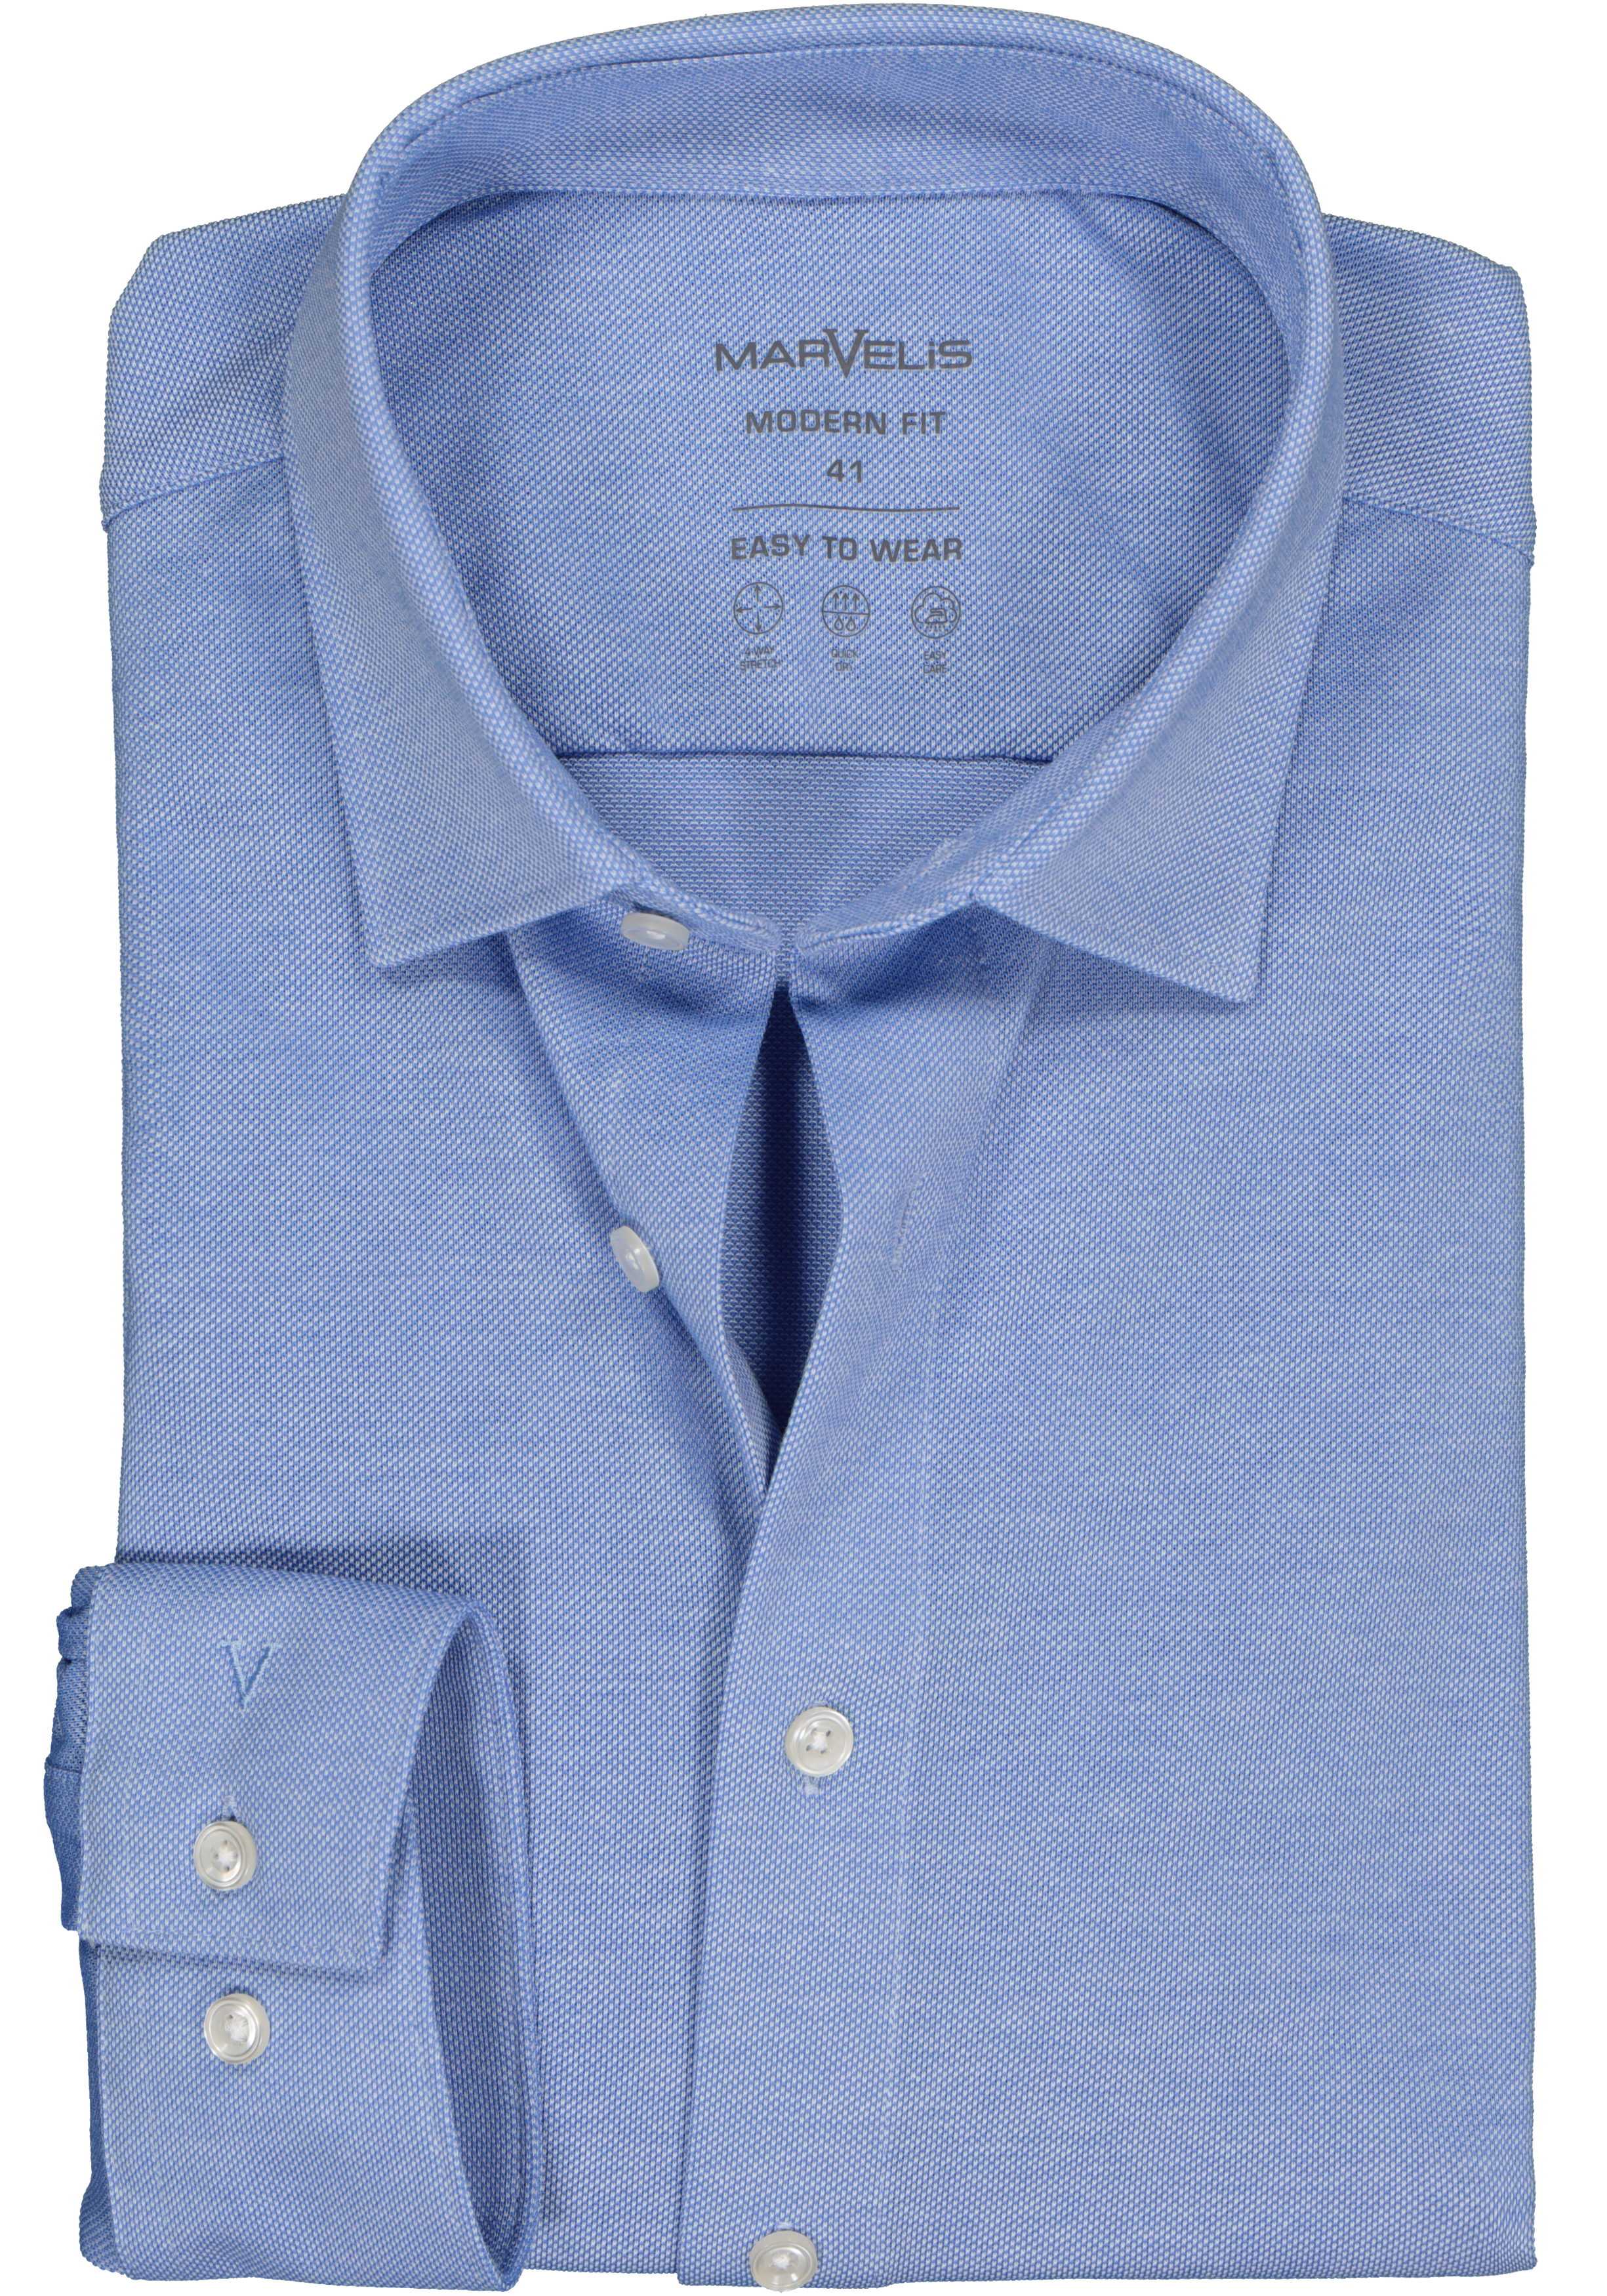 MARVELIS jersey modern fit overhemd, lichtblauw tricot